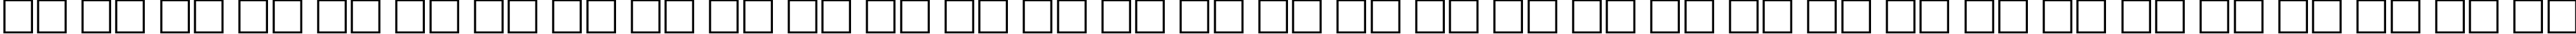 Пример написания русского алфавита шрифтом Groening Plain